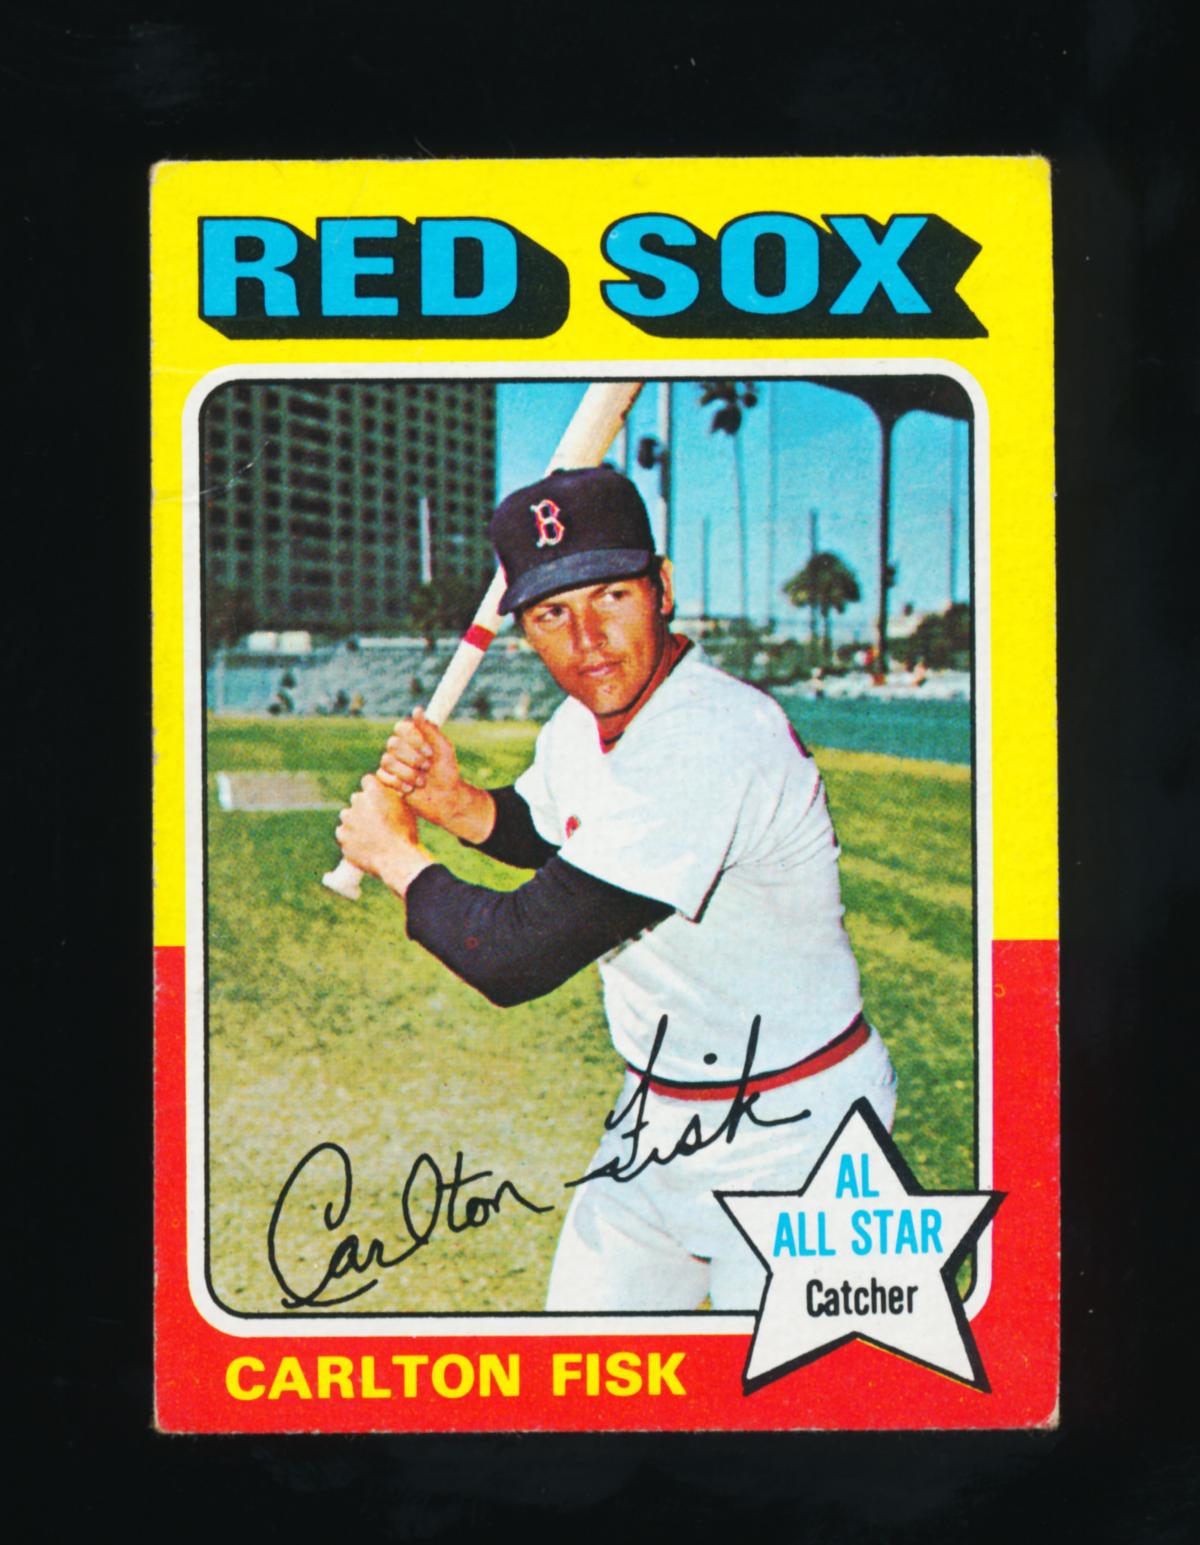 1975 Topps Mini Baseball Card #80 Hall of Famer Carlton Fisk Boston Red Sox